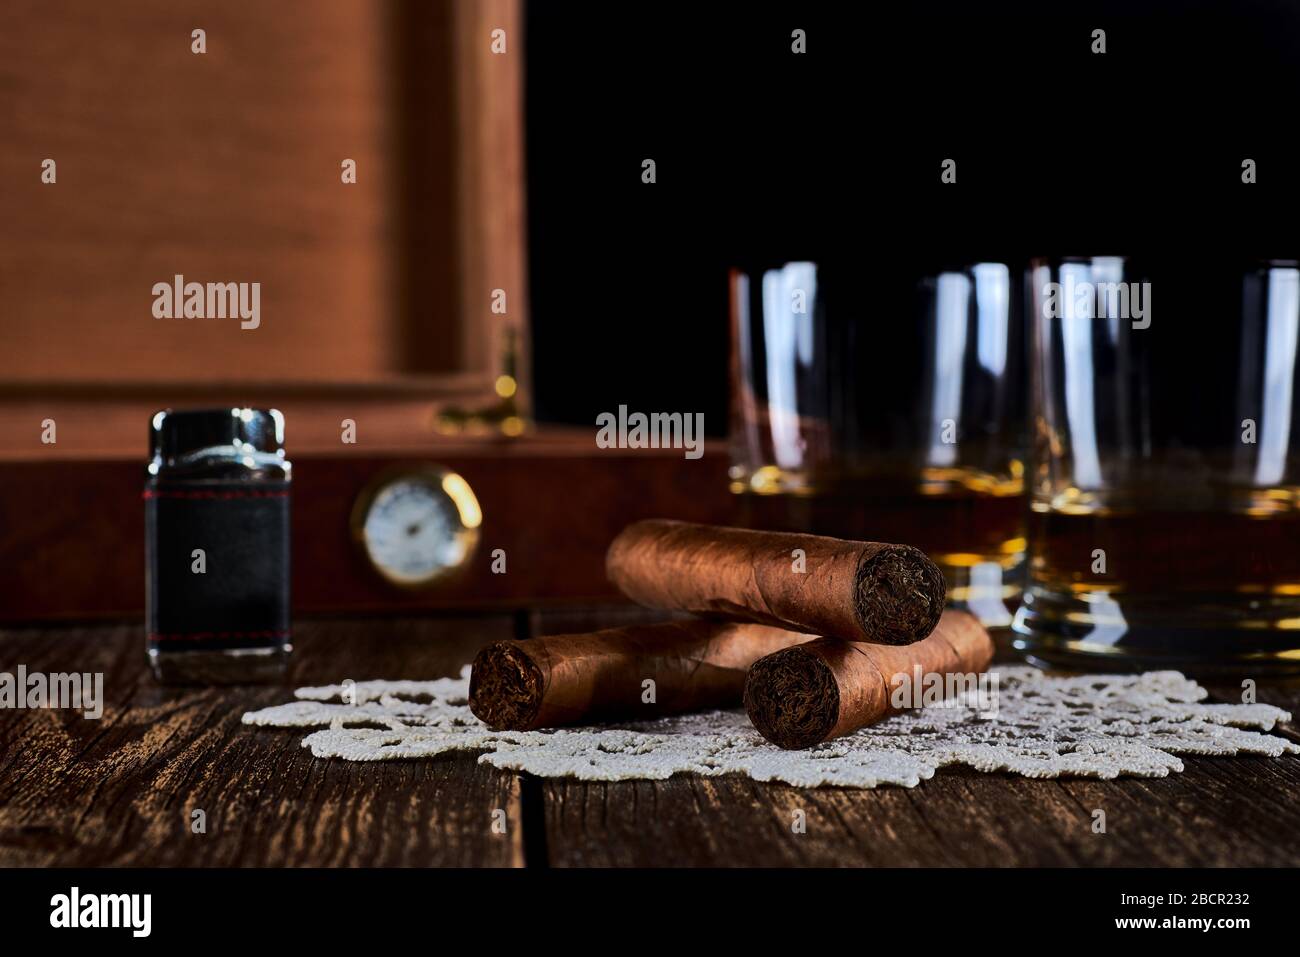 Stillleben mit drei kubanischen Zigarren, zwei Gläsern Whisky oder Rum, leichtere und Holzkiste mit Hygrometer. Alte Holztischplatte und schwarzer Hintergrund. Stockfoto